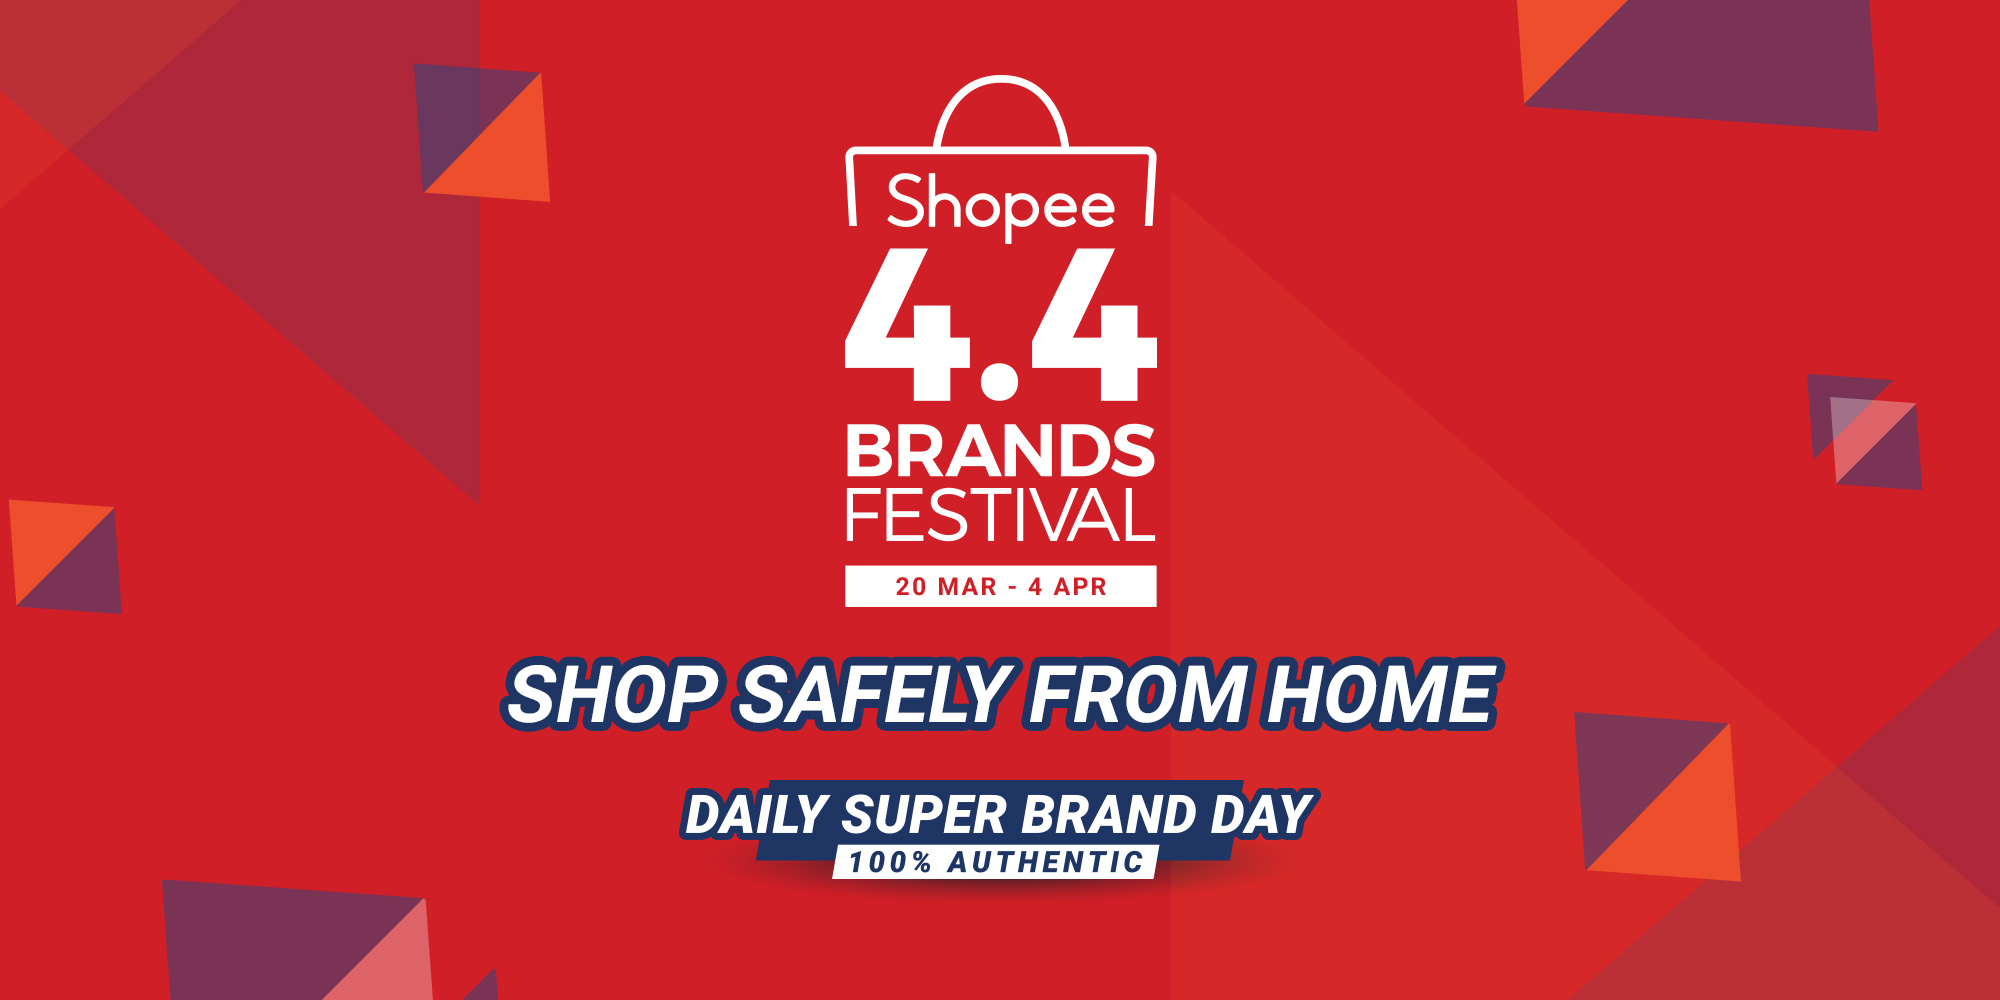 Shopee 4.4 Brands Festival